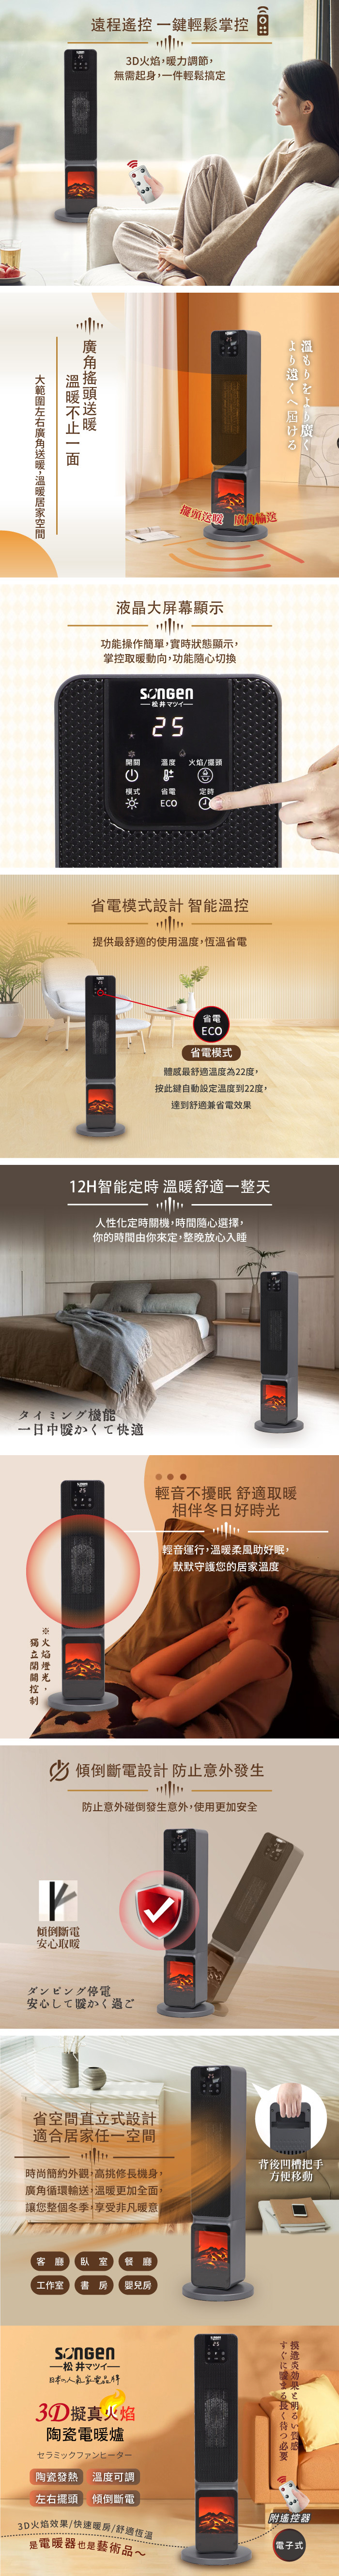 【松井】日系3D擬真火焰陶瓷立式電暖爐 加萌趣毛絨電暖袋(SG-2801PTC)